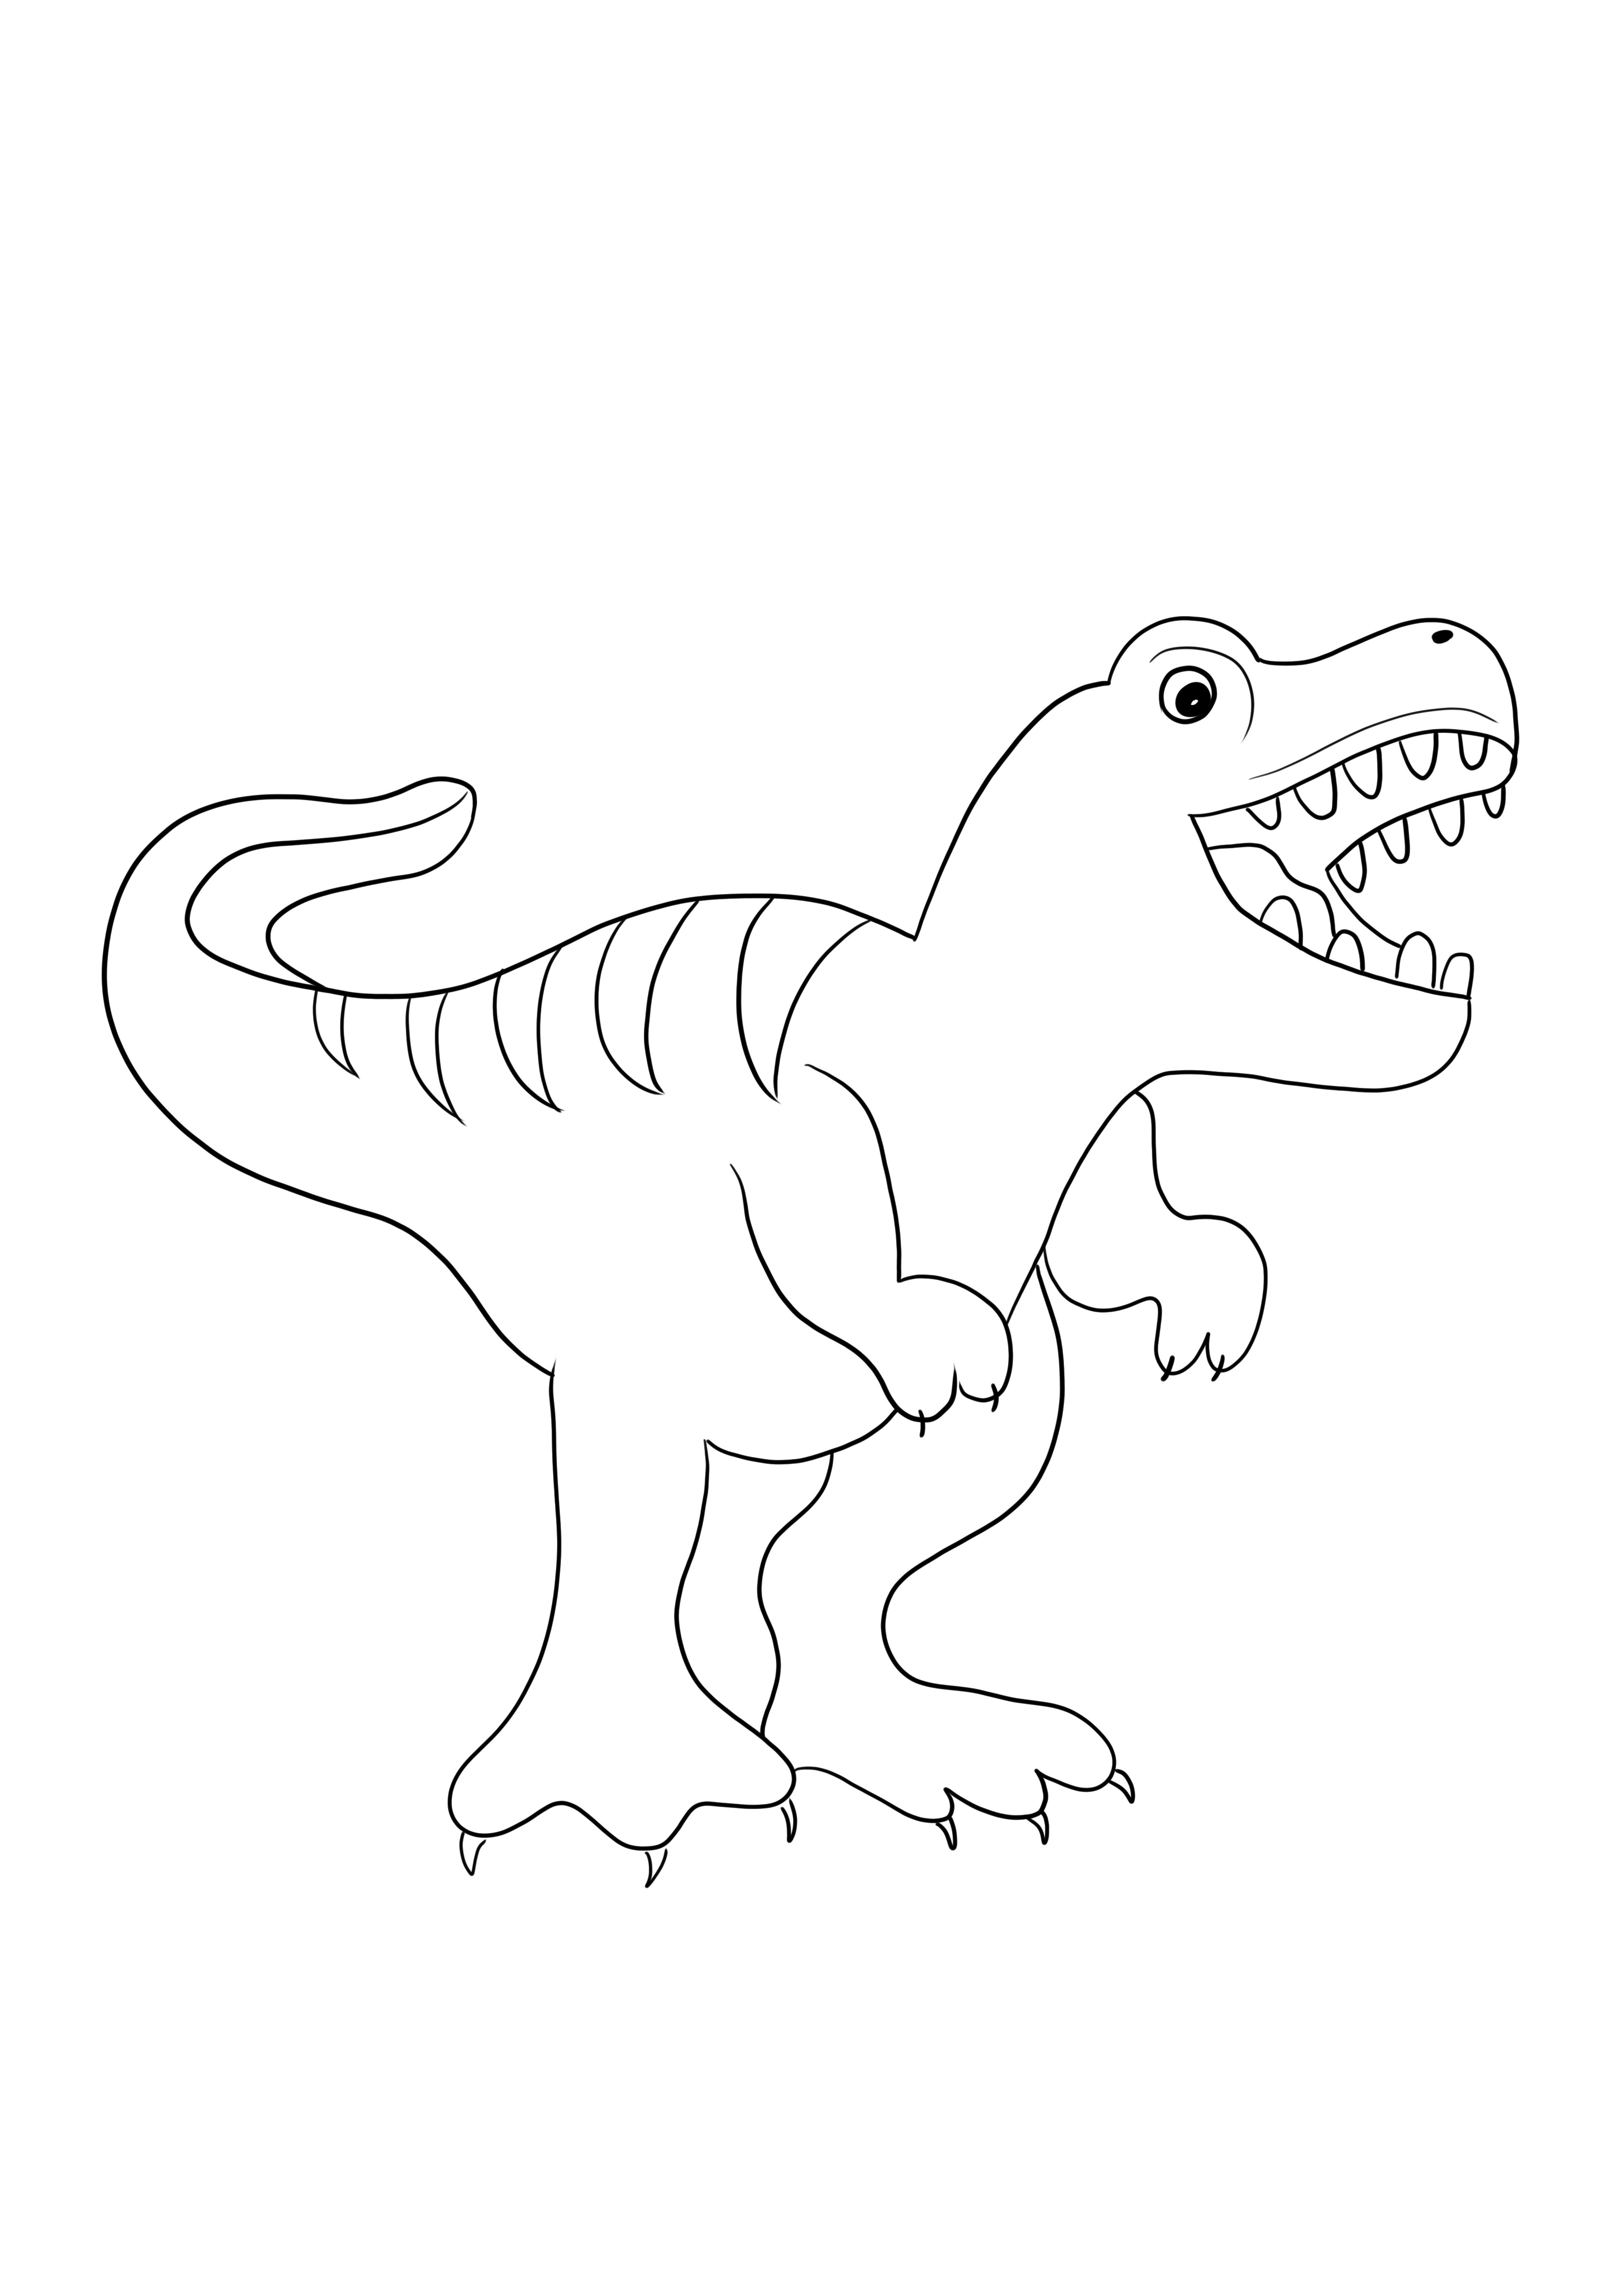 Warna emoji T-rex dan unduh gambar gratis